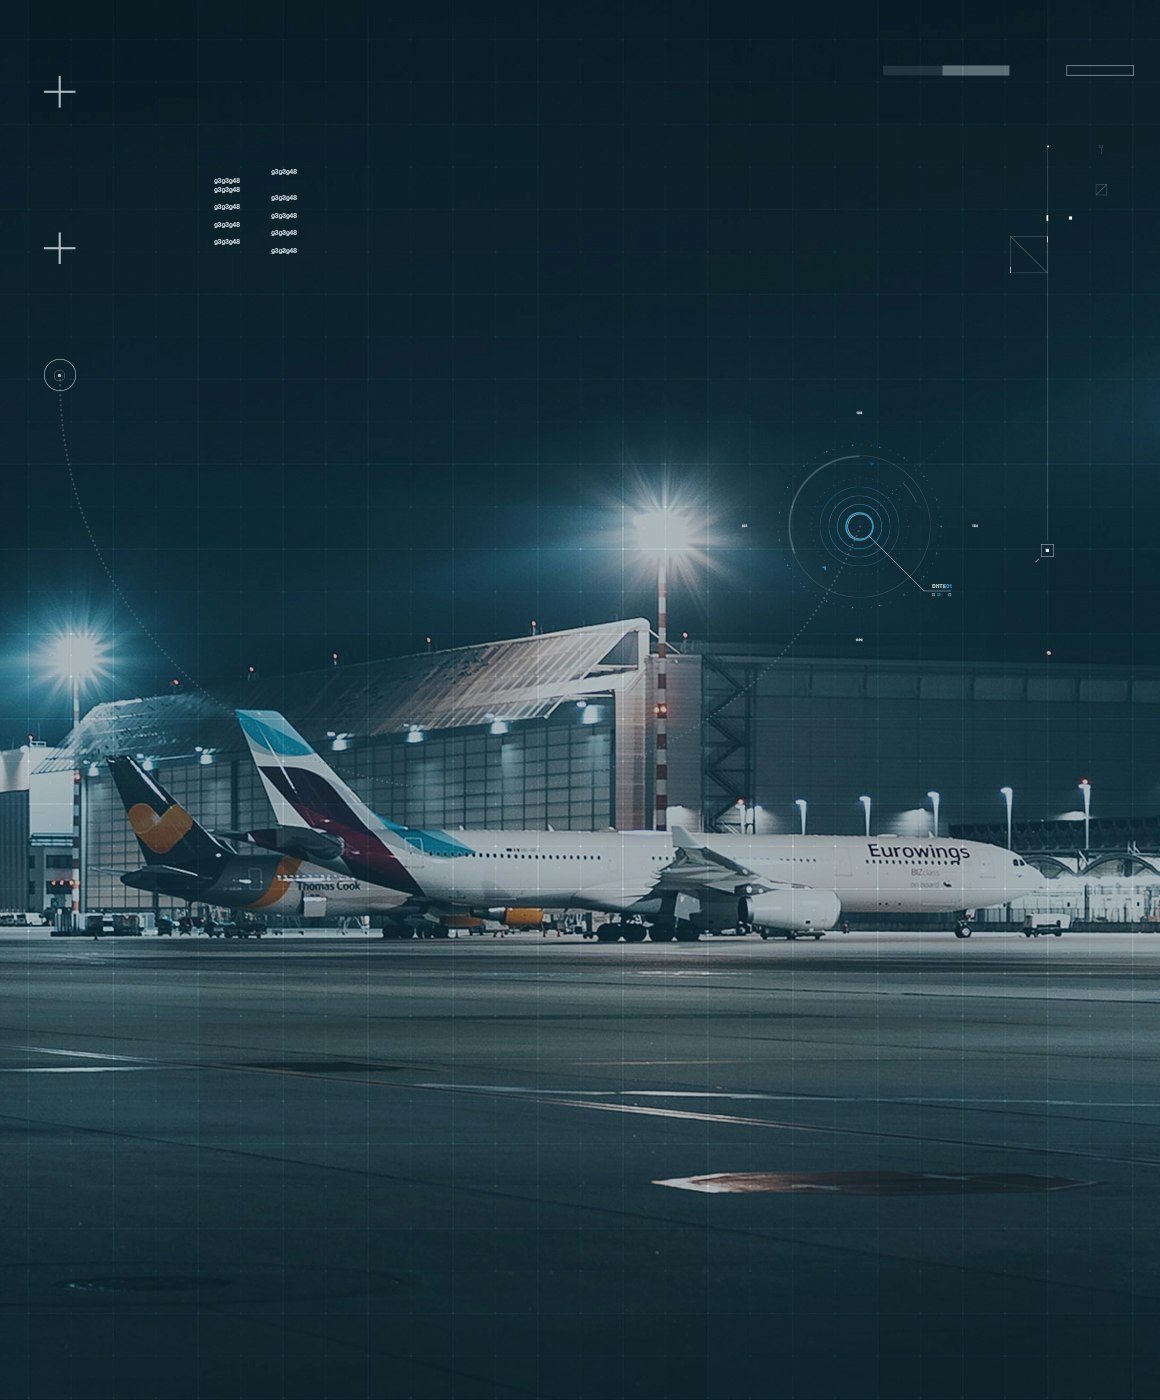 Airplanes at an airport at night